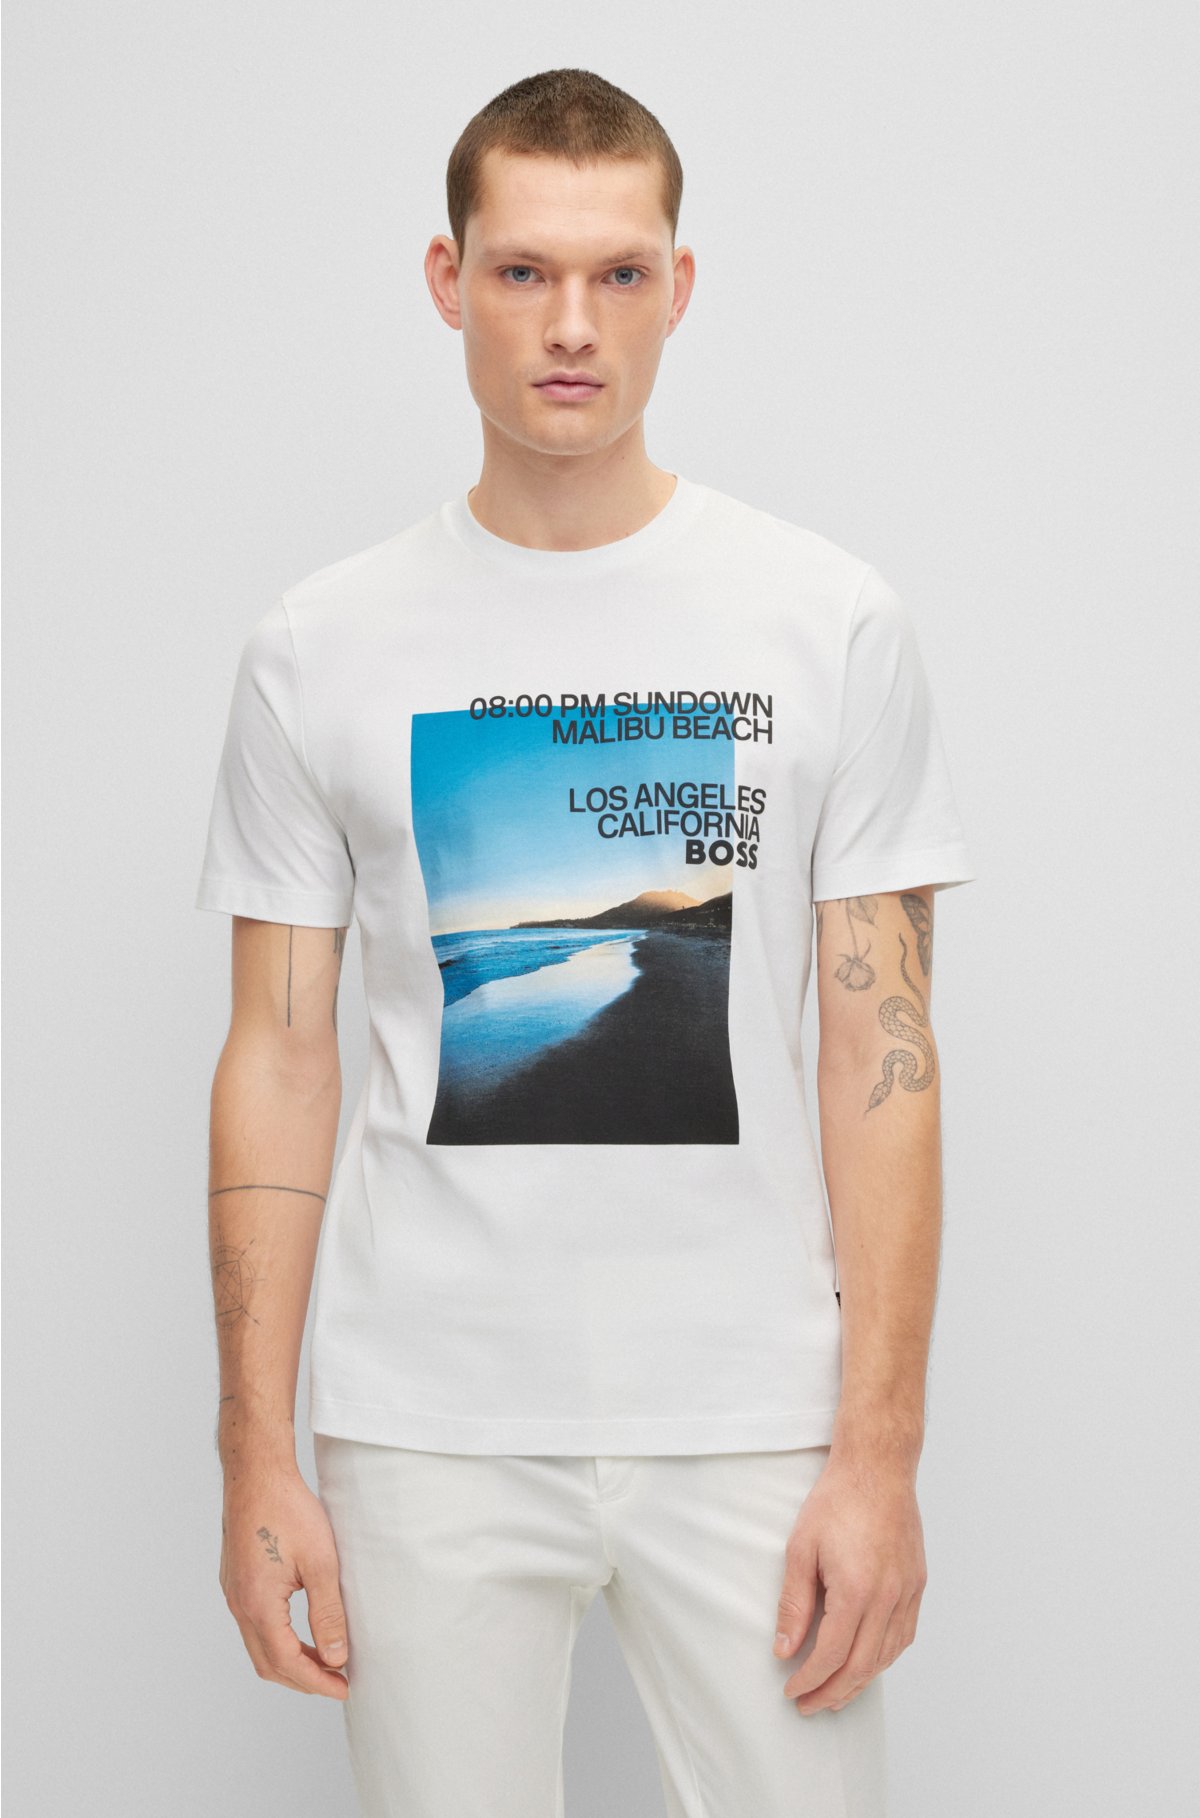 - T-shirt bomuldsblanding med et fotografisk strandtryk samt logo